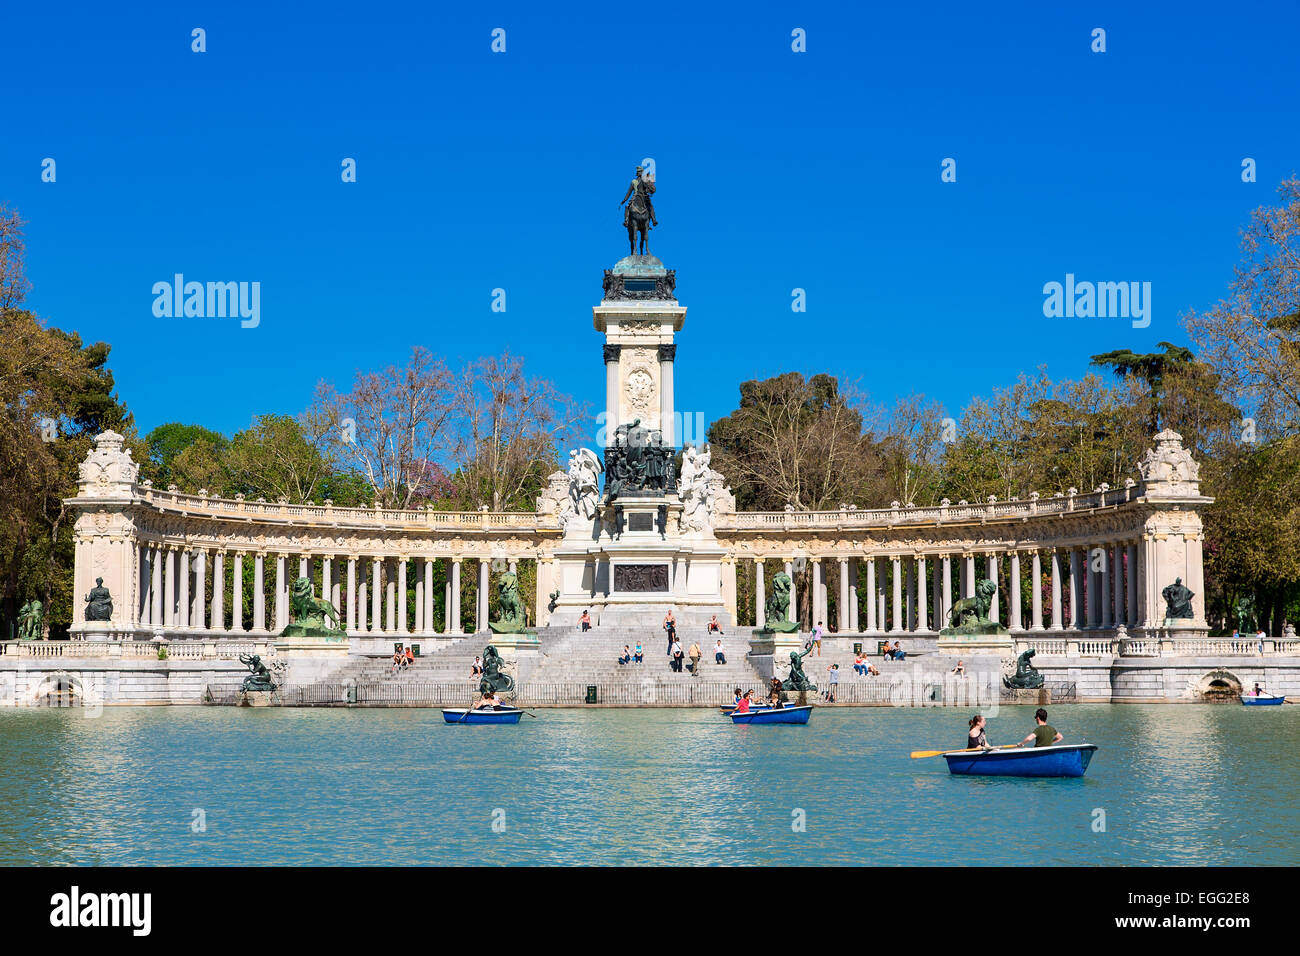 Boating lake in Buen Retiro park, Madrid Stock Photo